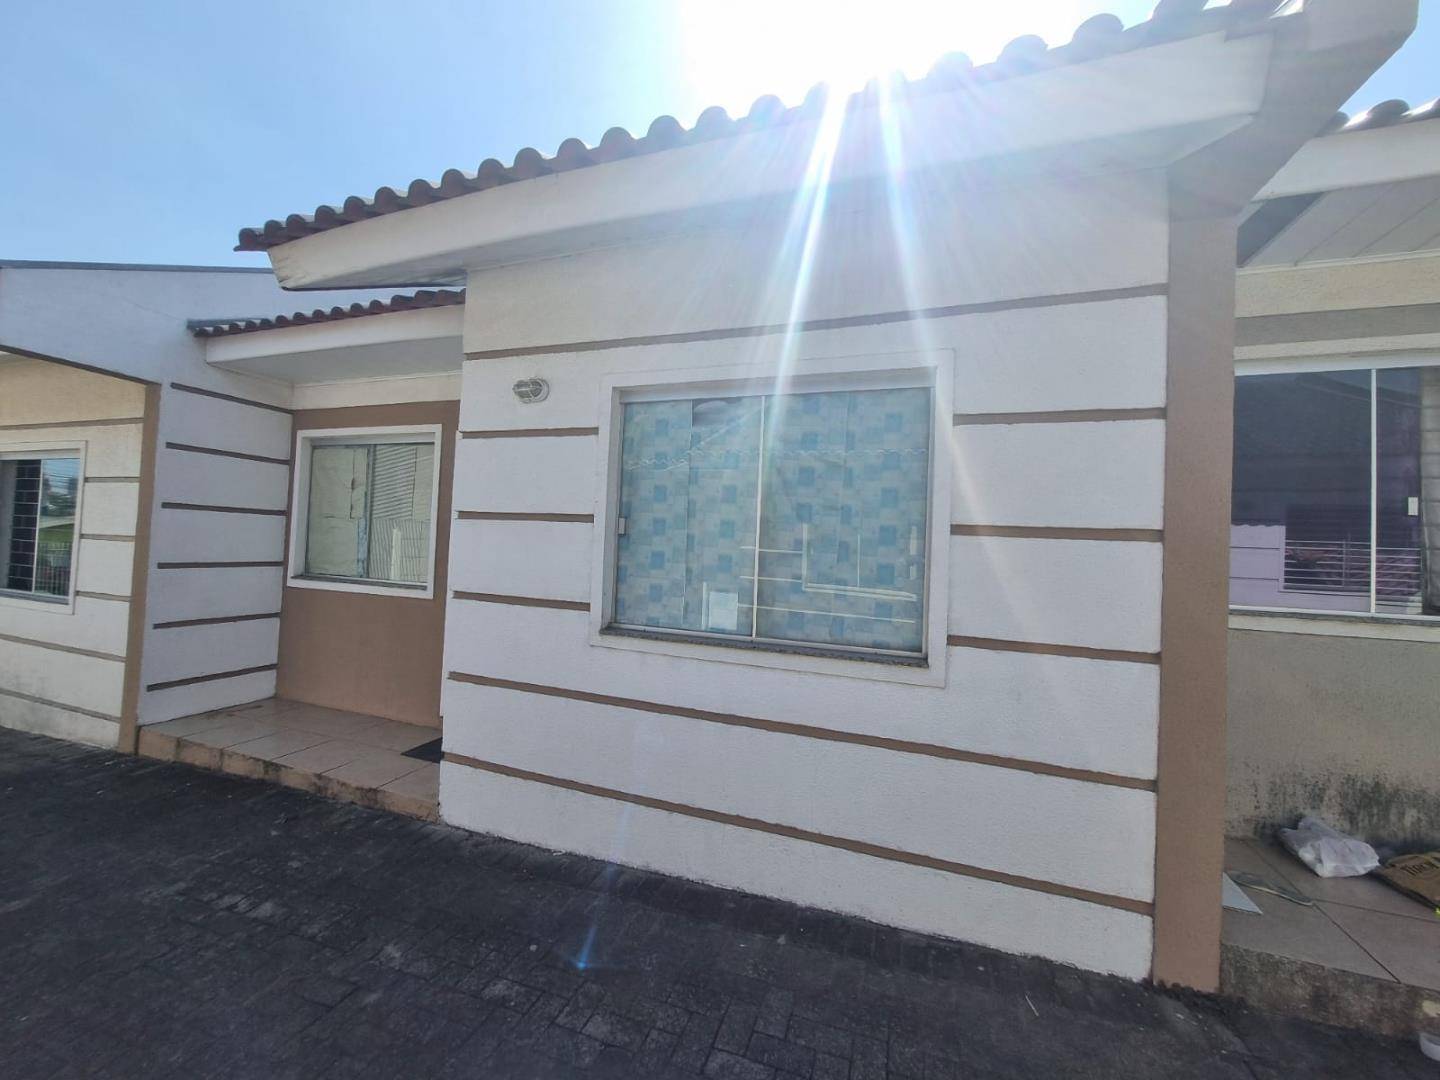 Casa para vendalocacaovenda e locacao no Boa Vista em Ponta Grossa com 48,84m² por R$ 199.900,00910,00